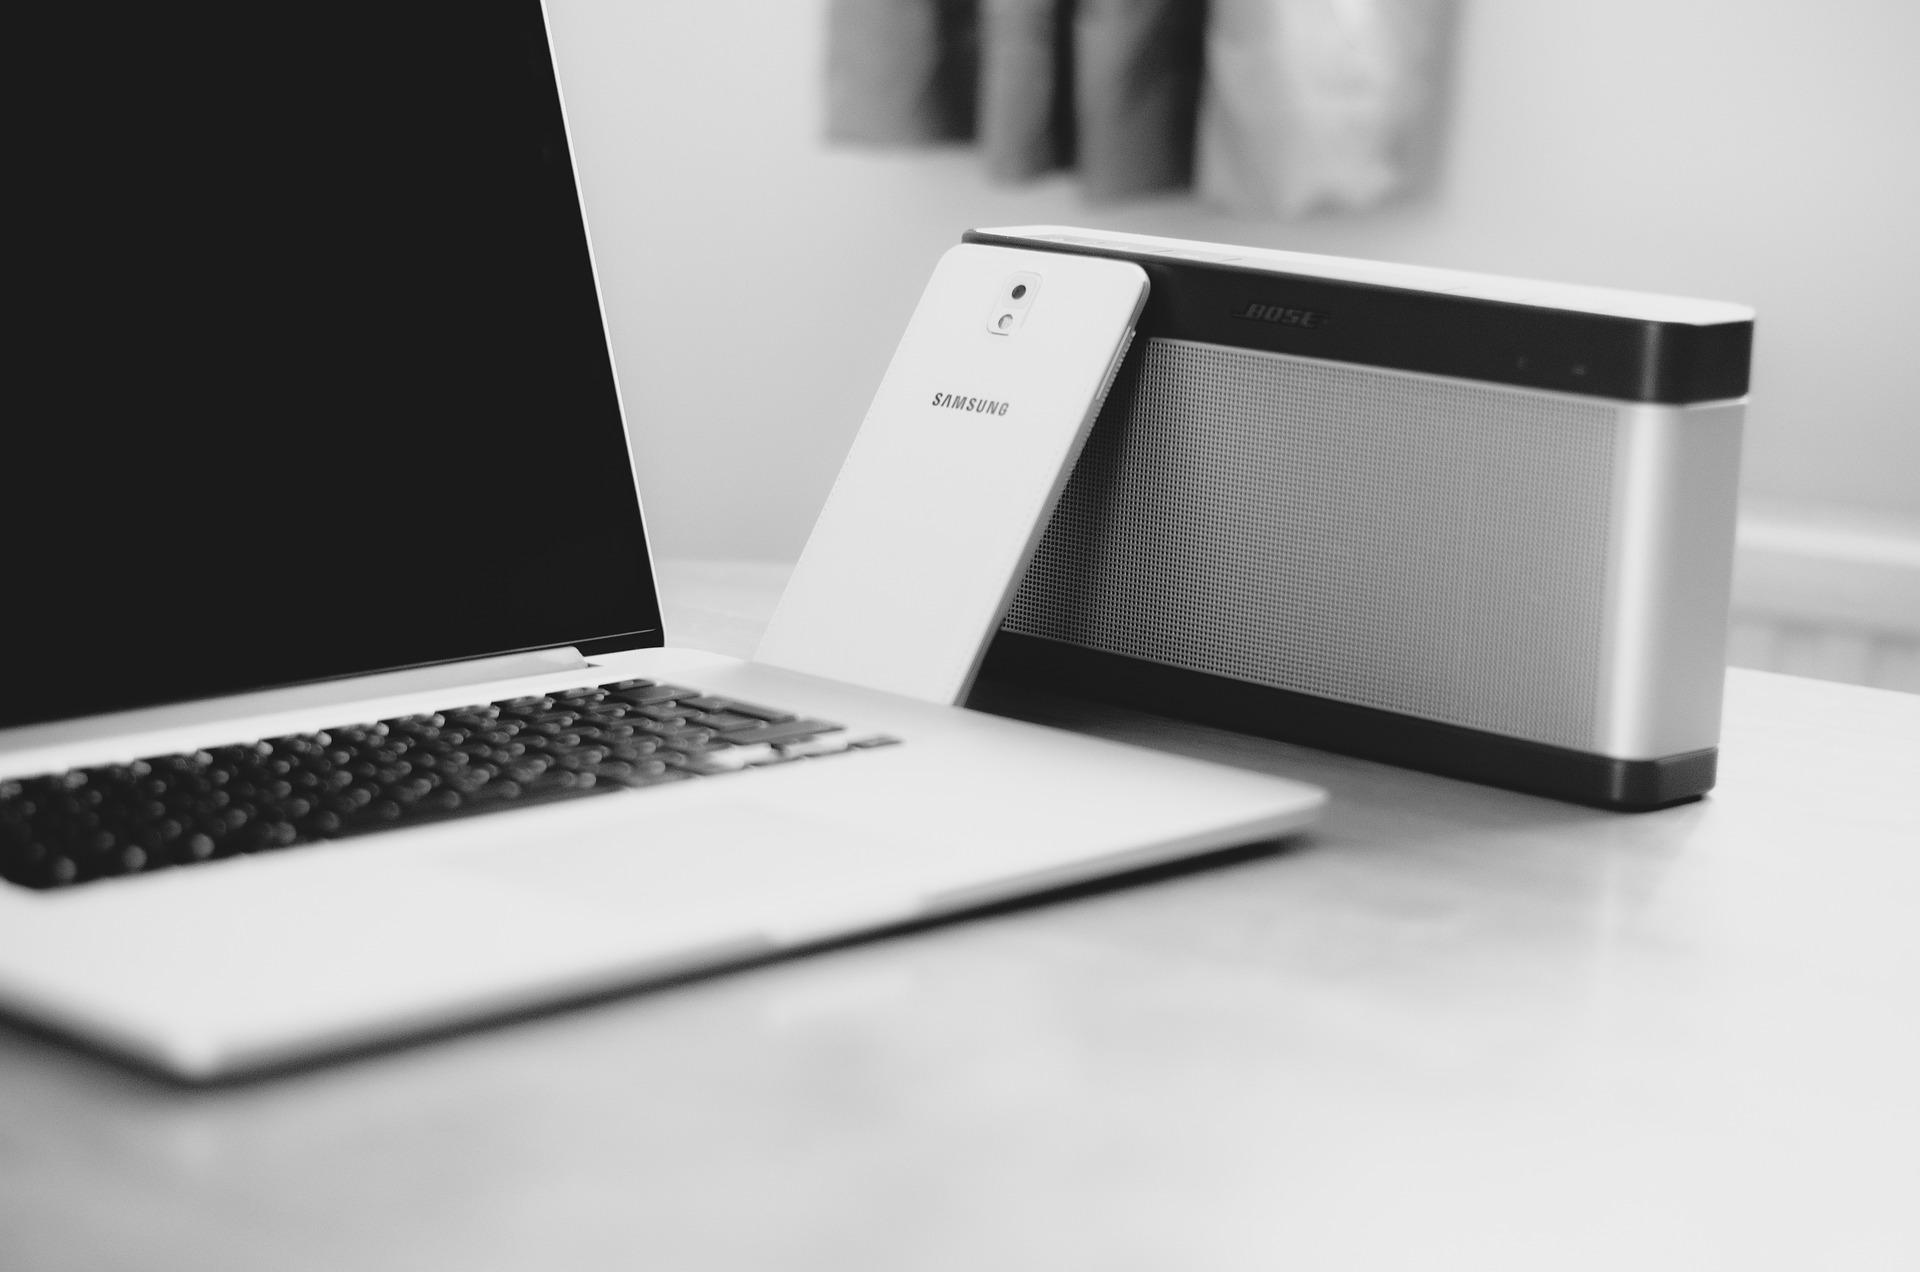 Widoczny fragment laptopa oraz telefonu komórkowego. Zdjęcie w czarno-białej kolorystyce (odpowiedzialność pracownika za mienie firmy)